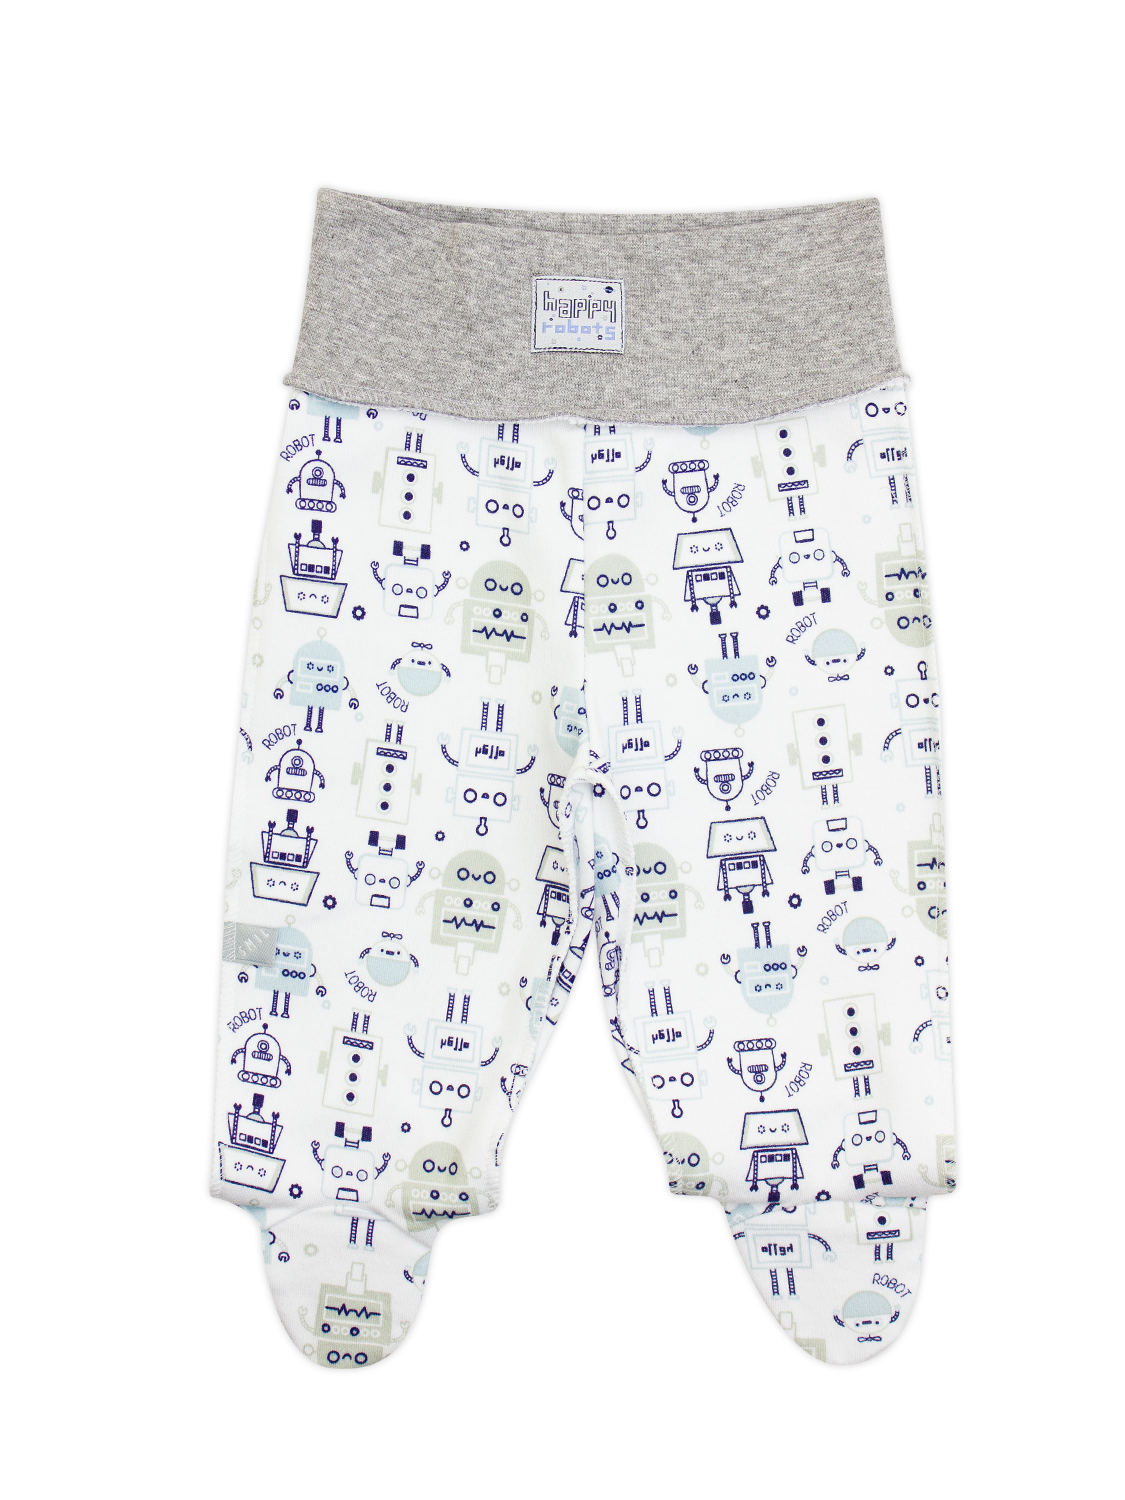 Ползунки-штанишки для мальчика, арт. 107321, возраст от 0 до 3 месяцев